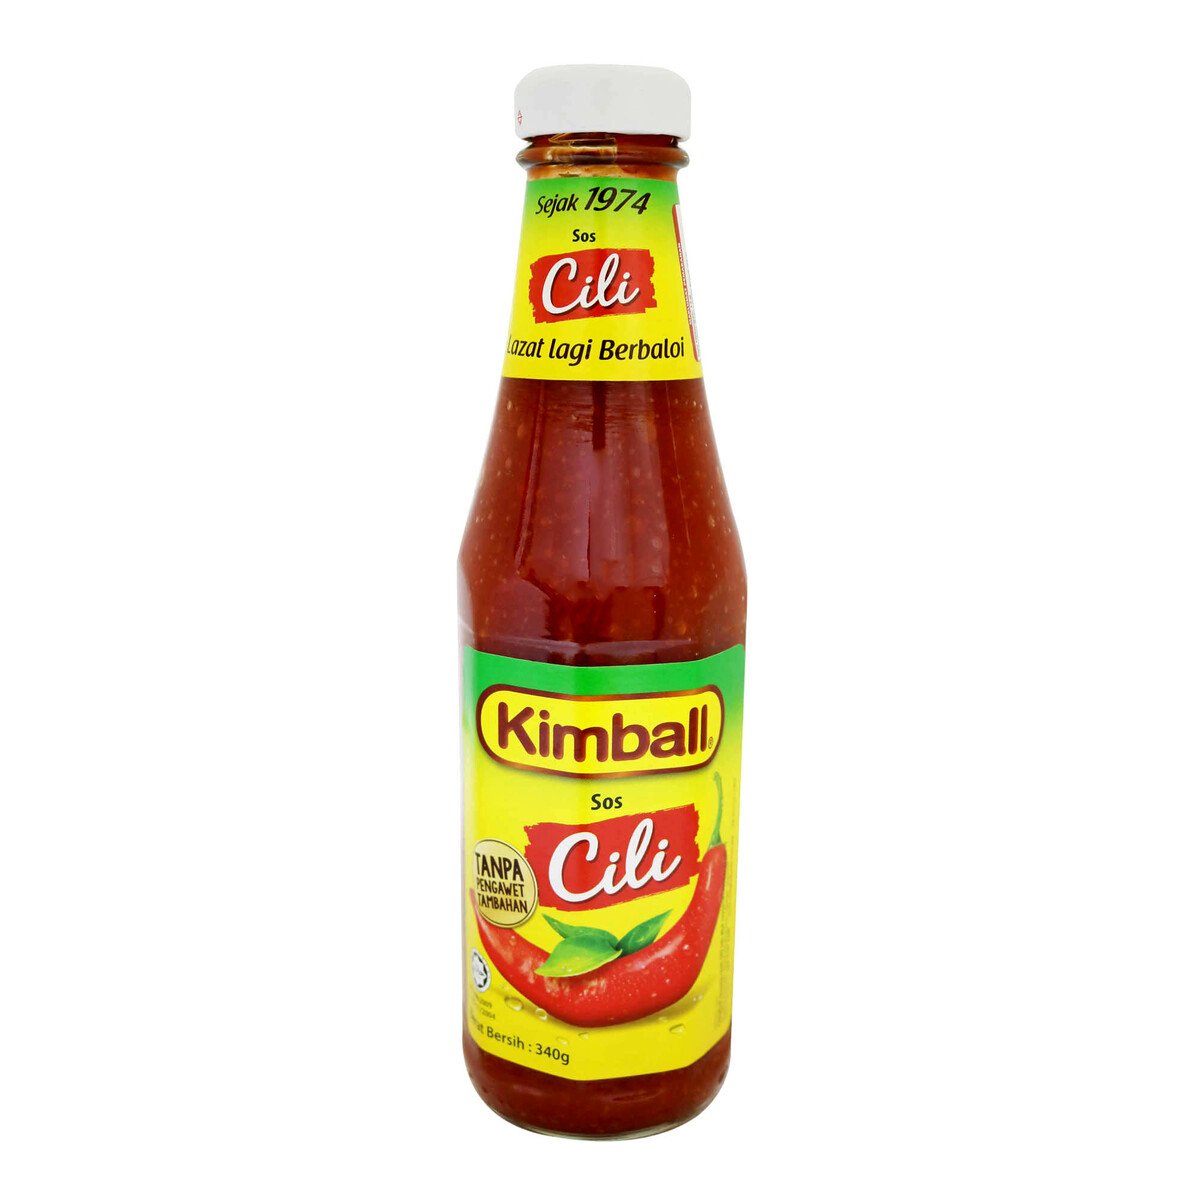 Kimball Chilli Sauce 340g